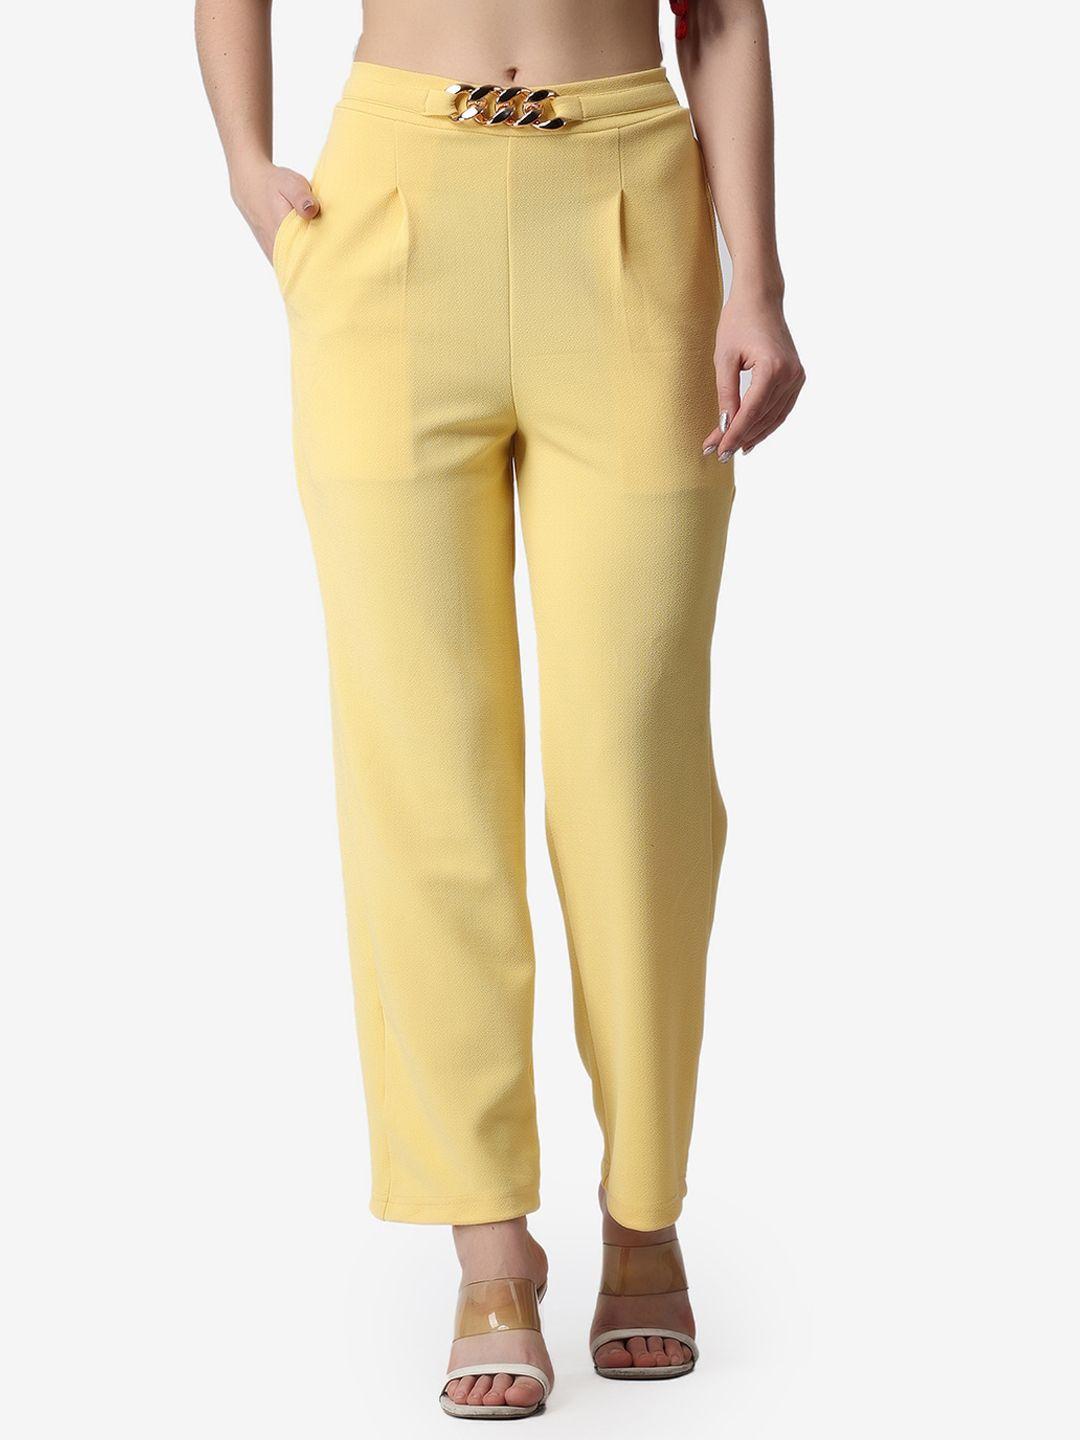 popwings-women-smart-loose-fit-wrinkle-free-pleated-trousers